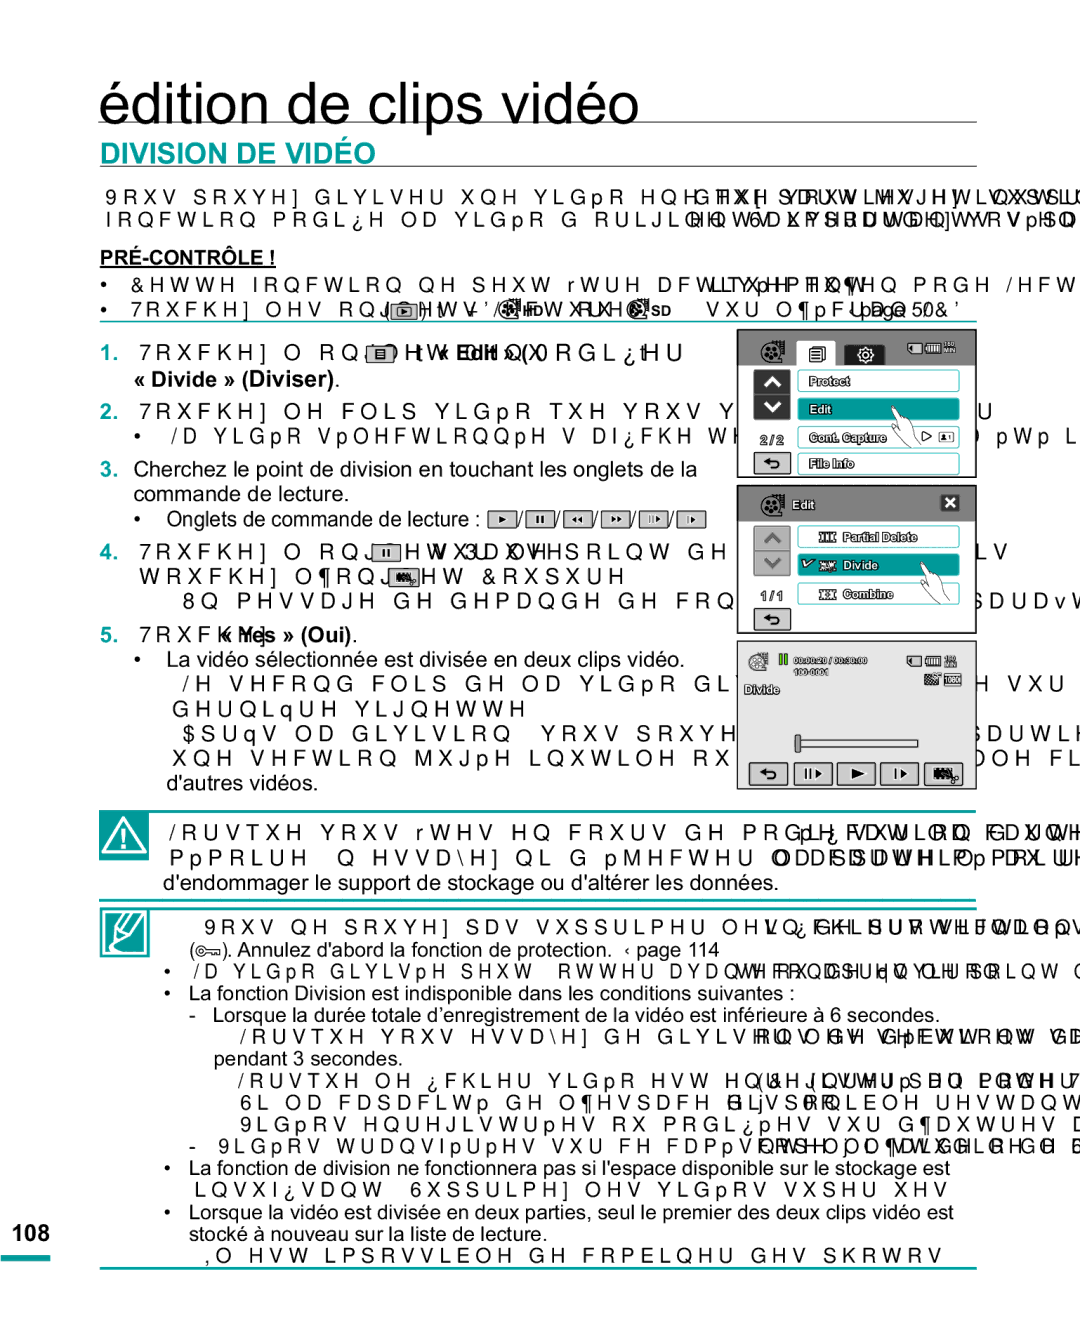 Samsung HMX-R10BP/EDC, HMX-R10SP/EDC manual Division DE Vidéo, « Divide » Diviser, 7RXFKH« Yes » Oui 